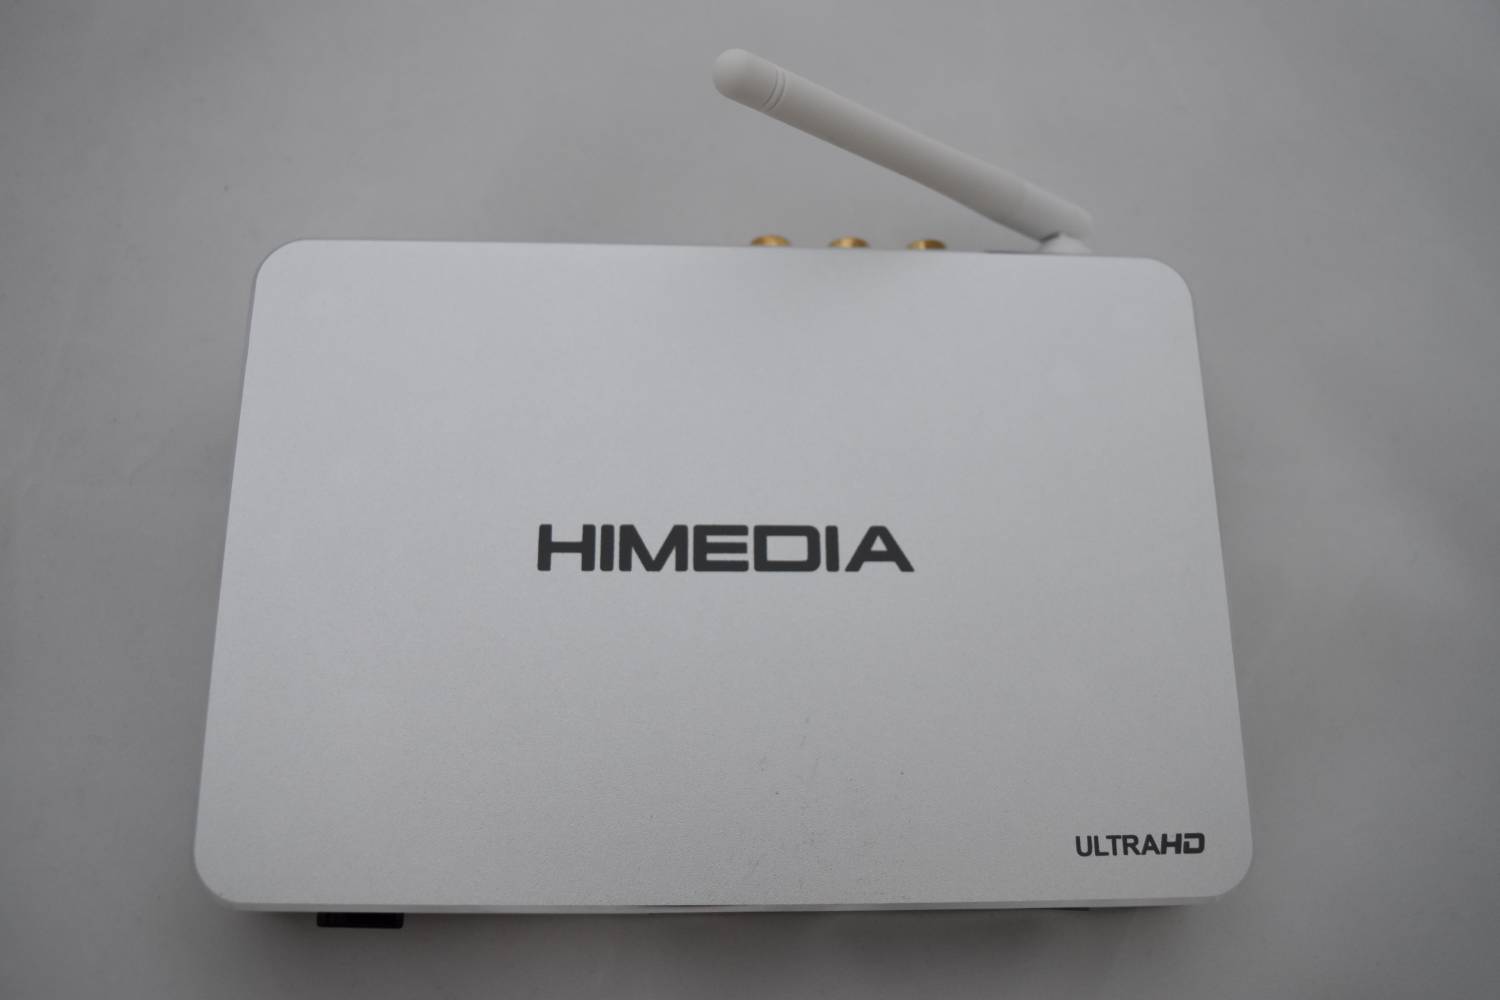 Магазины Китая: HiMedia Q5 Pro – довольно серьезный IP Box